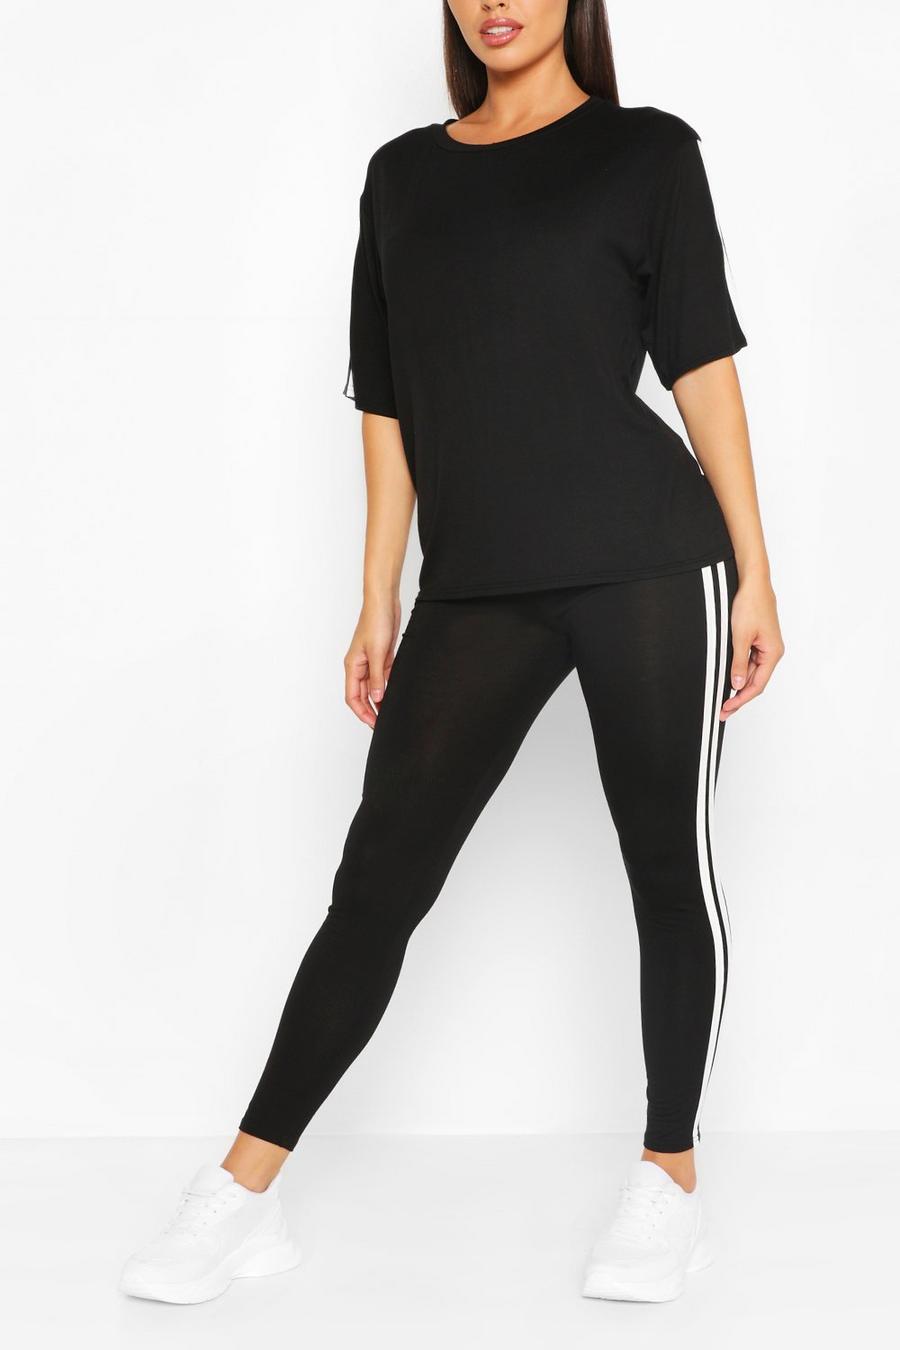 Black Short Sleeve Side Stripe Loungewear Set